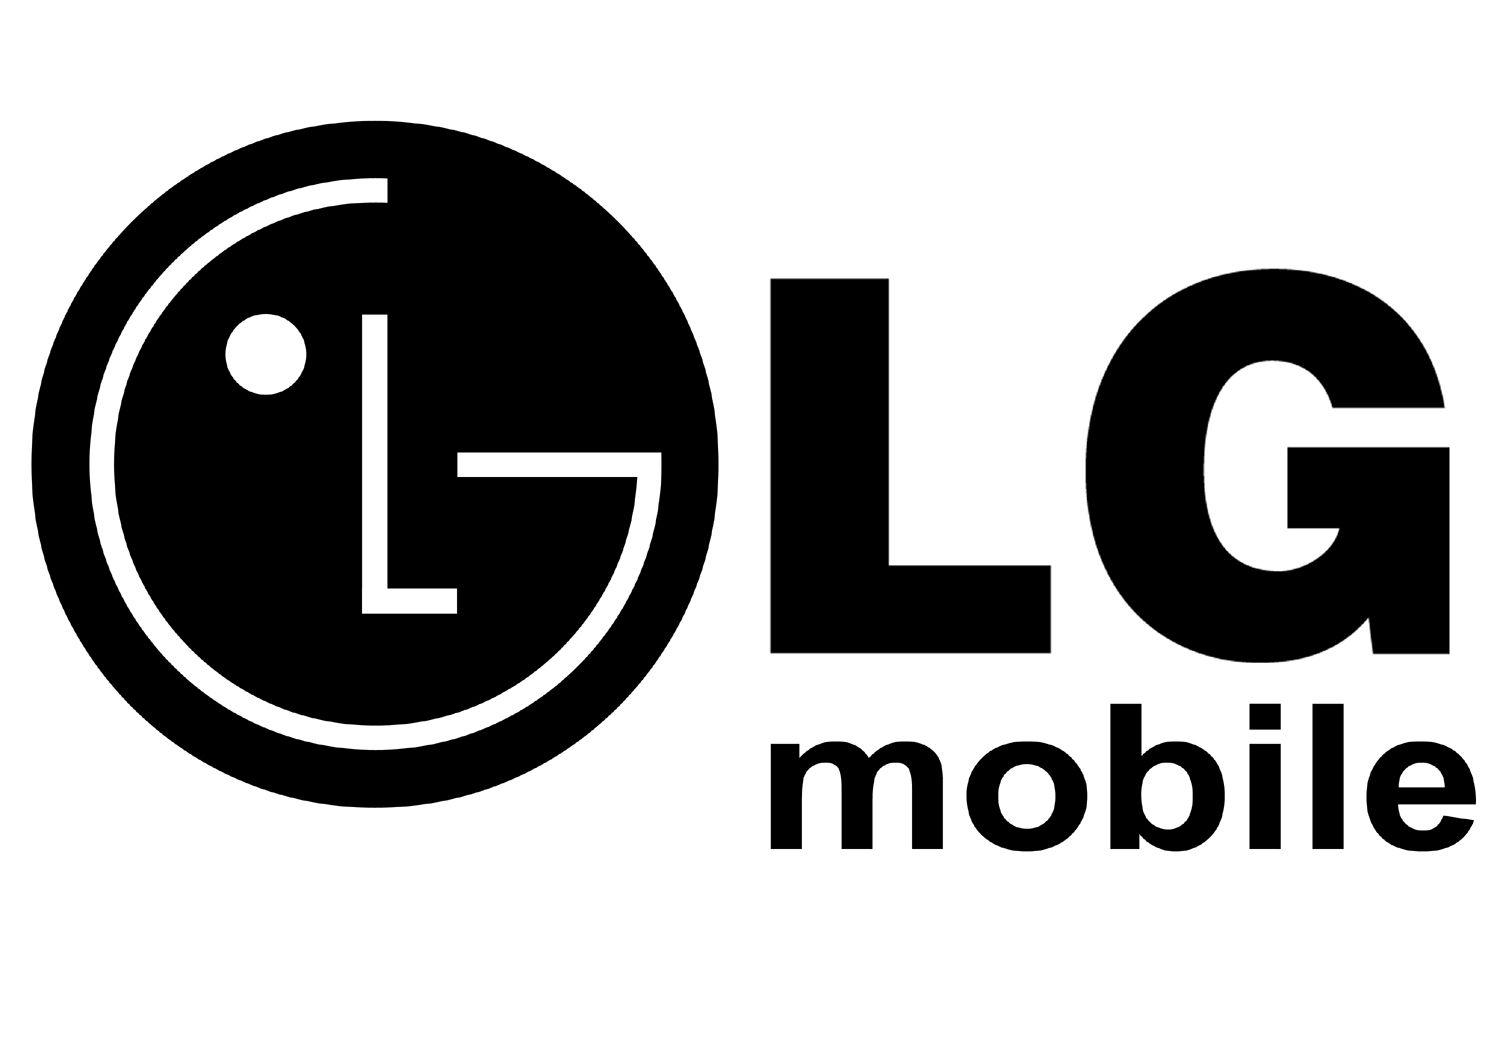 LG Mobile Logo - Logo LG mobile - logo lg